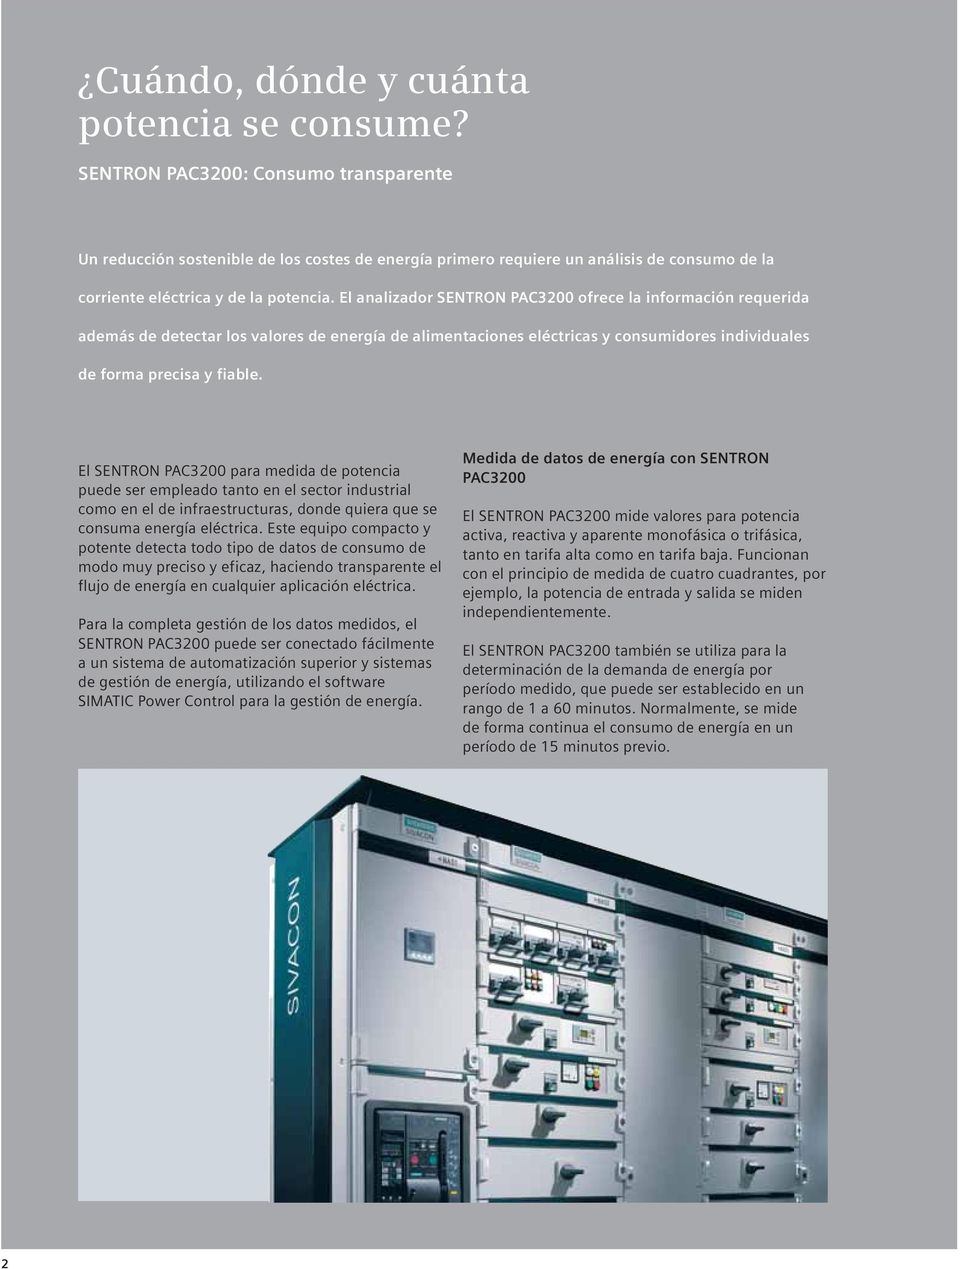 El analizador SENTRON PAC3200 ofrece la información requerida además de detectar los valores de energía de alimentaciones eléctricas y consumidores individuales de forma precisa y fiable.